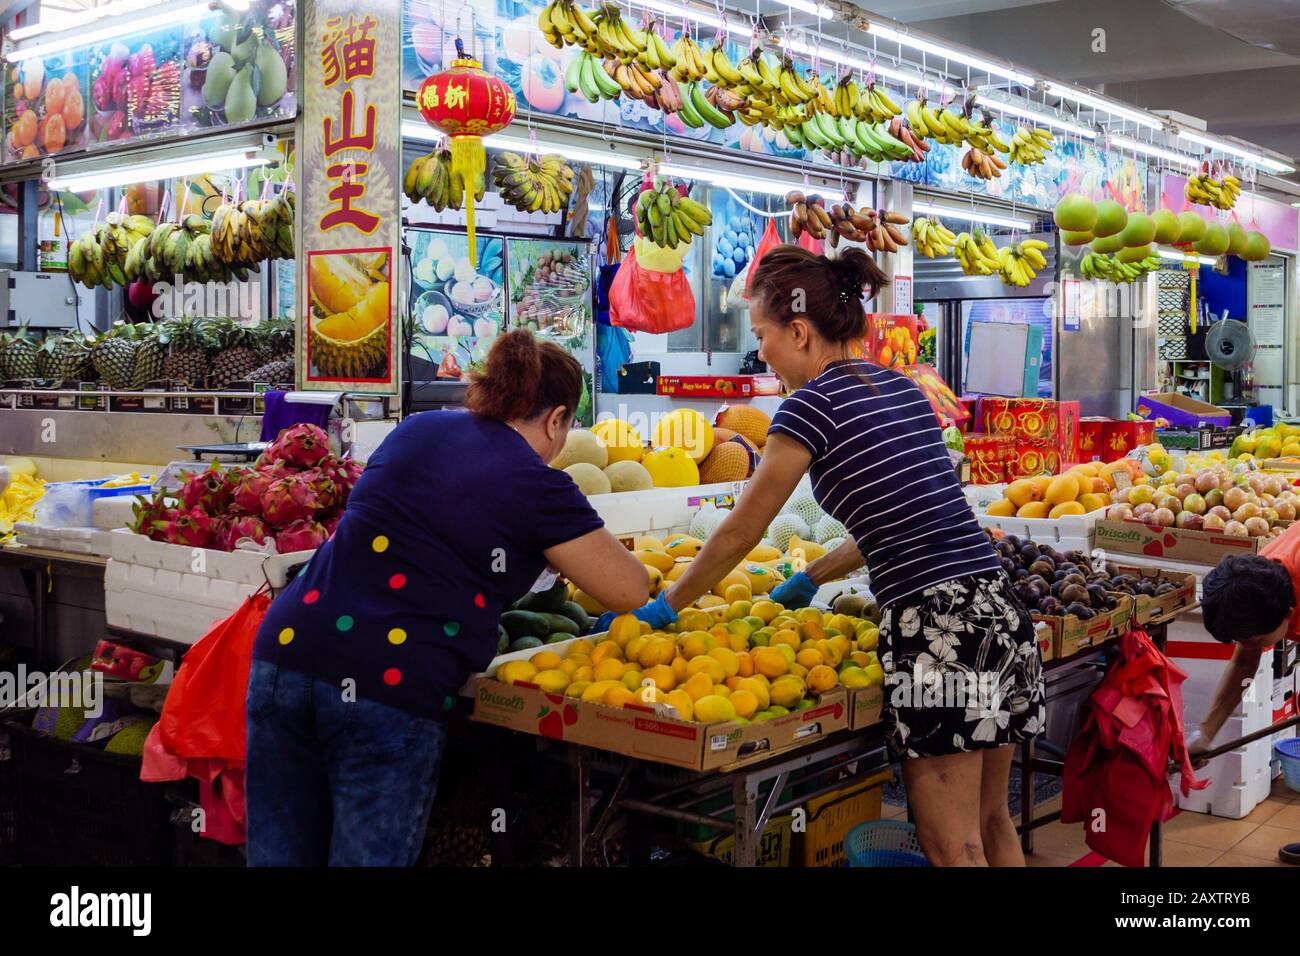 Singapour – 4 JANVIER 2020 – un vendeur de fruits chinois asiatique servant ses clients dans son étalage de fruits sur le marché humide Ang Mo Kio à Singapour, en Asie du Sud-est. Banque D'Images